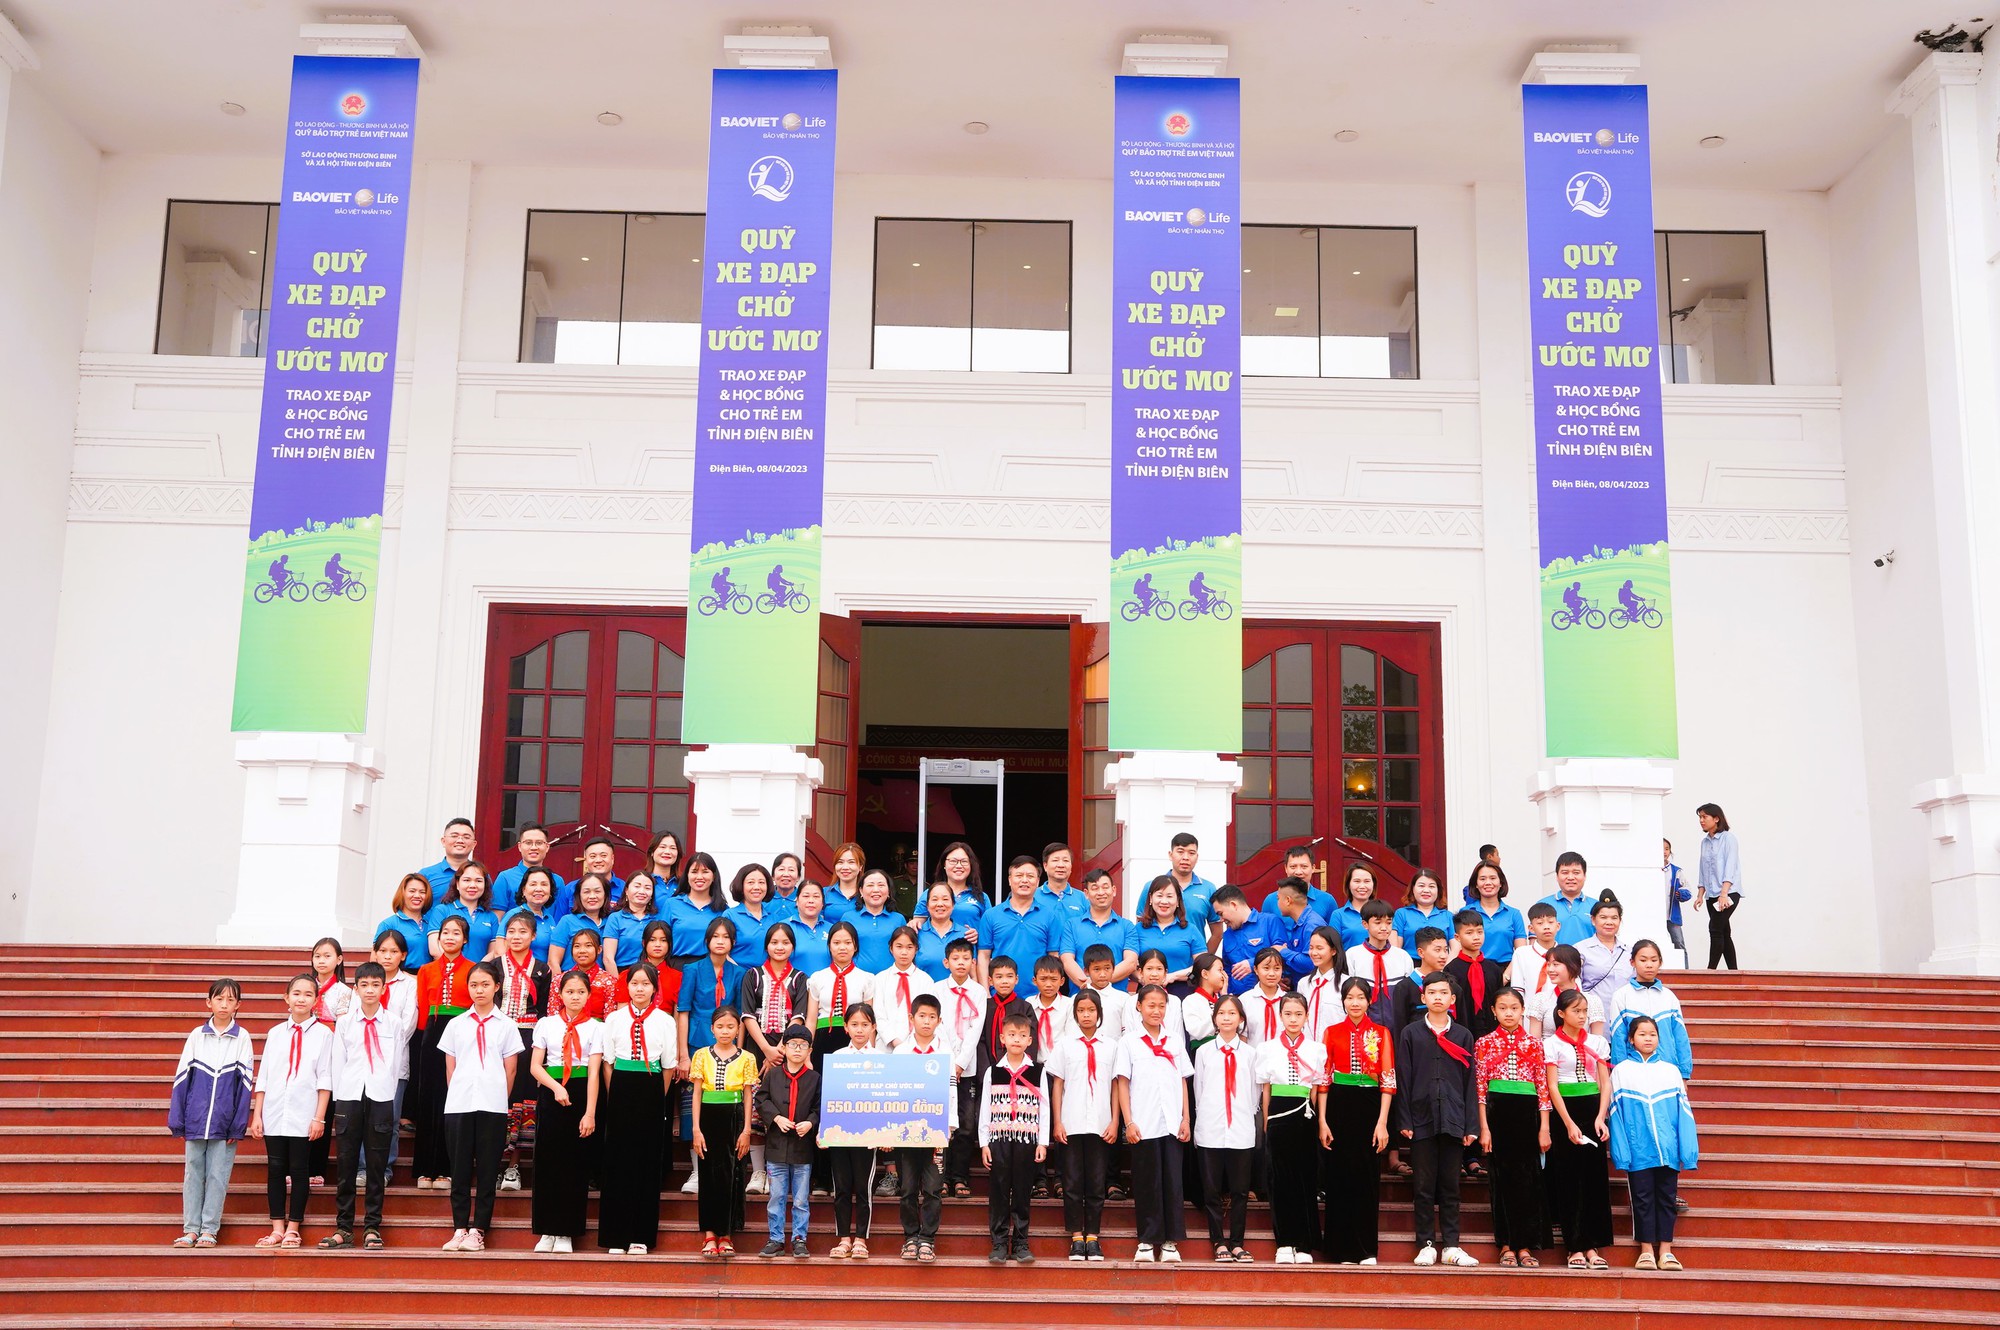 “Quỹ xe đạp chở ước mơ” là chương trình an sinh giáo dục được Bảo Việt Nhân thọ triển khai đến nay là 18 năm